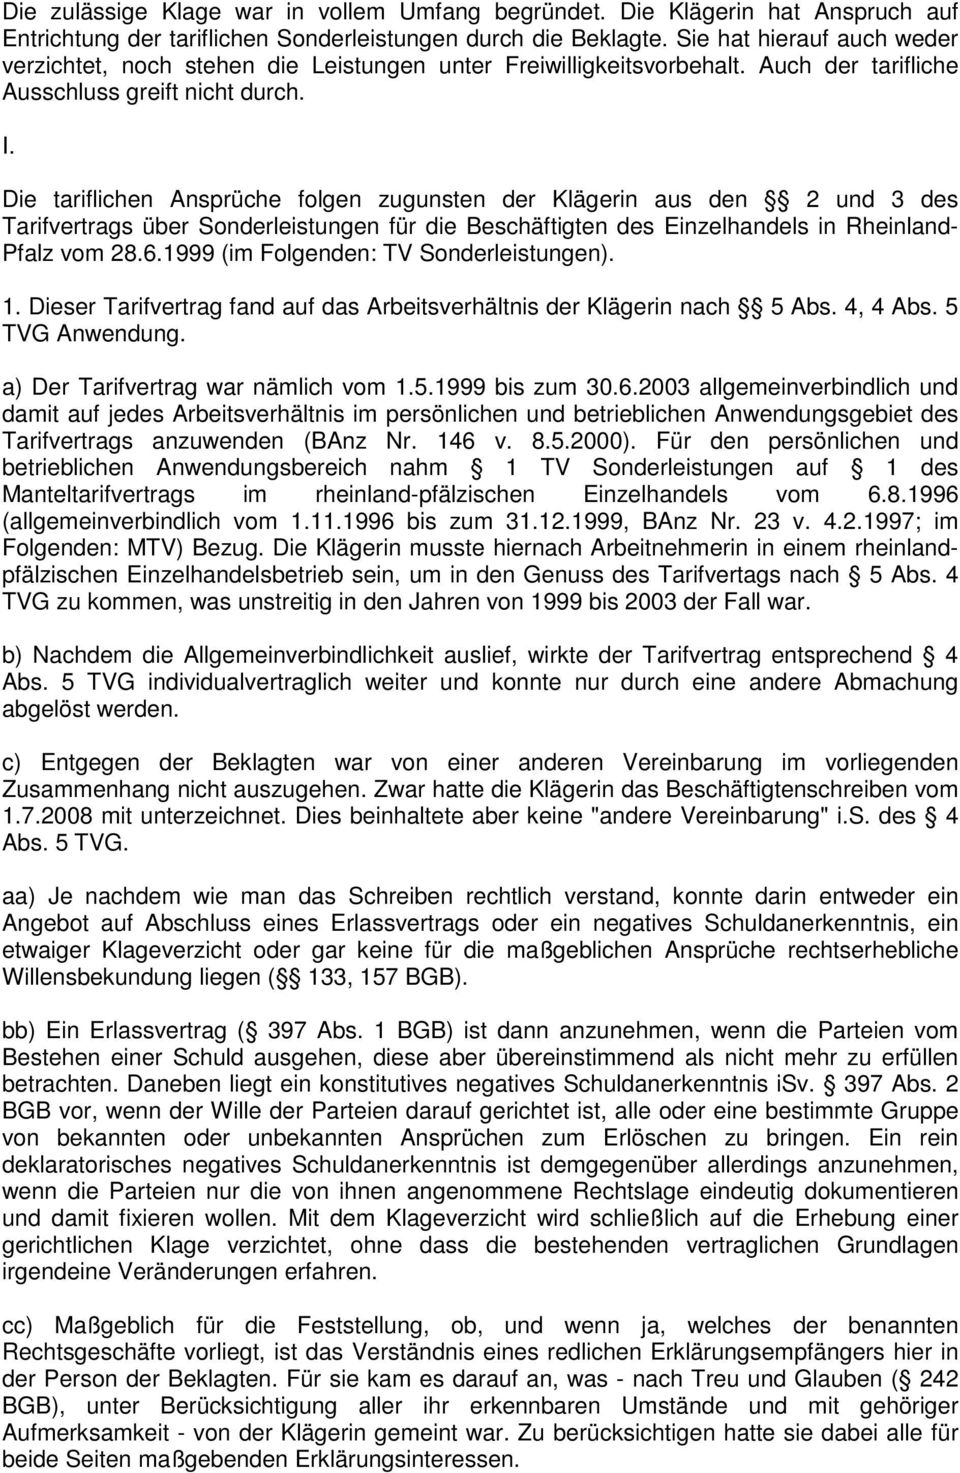 Die tariflichen Ansprüche folgen zugunsten der Klägerin aus den 2 und 3 des Tarifvertrags über Sonderleistungen für die Beschäftigten des Einzelhandels in Rheinland- Pfalz vom 28.6.